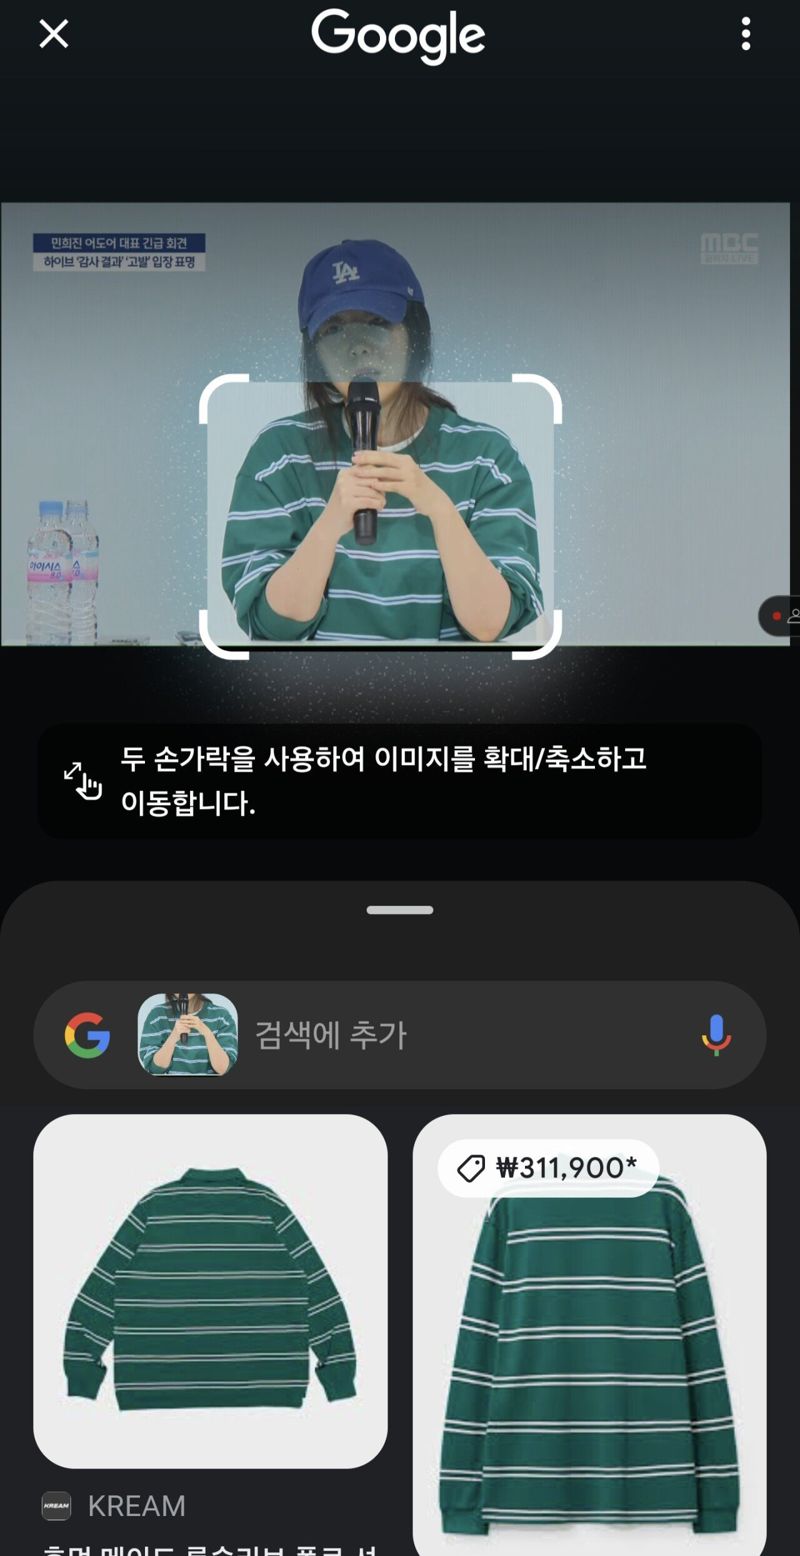 네티즌이 갤럭시 스마트폰에서 '서클 투 서치' 기능으로 어도어 민희진 대표 옷을 검색한 결과 캡처